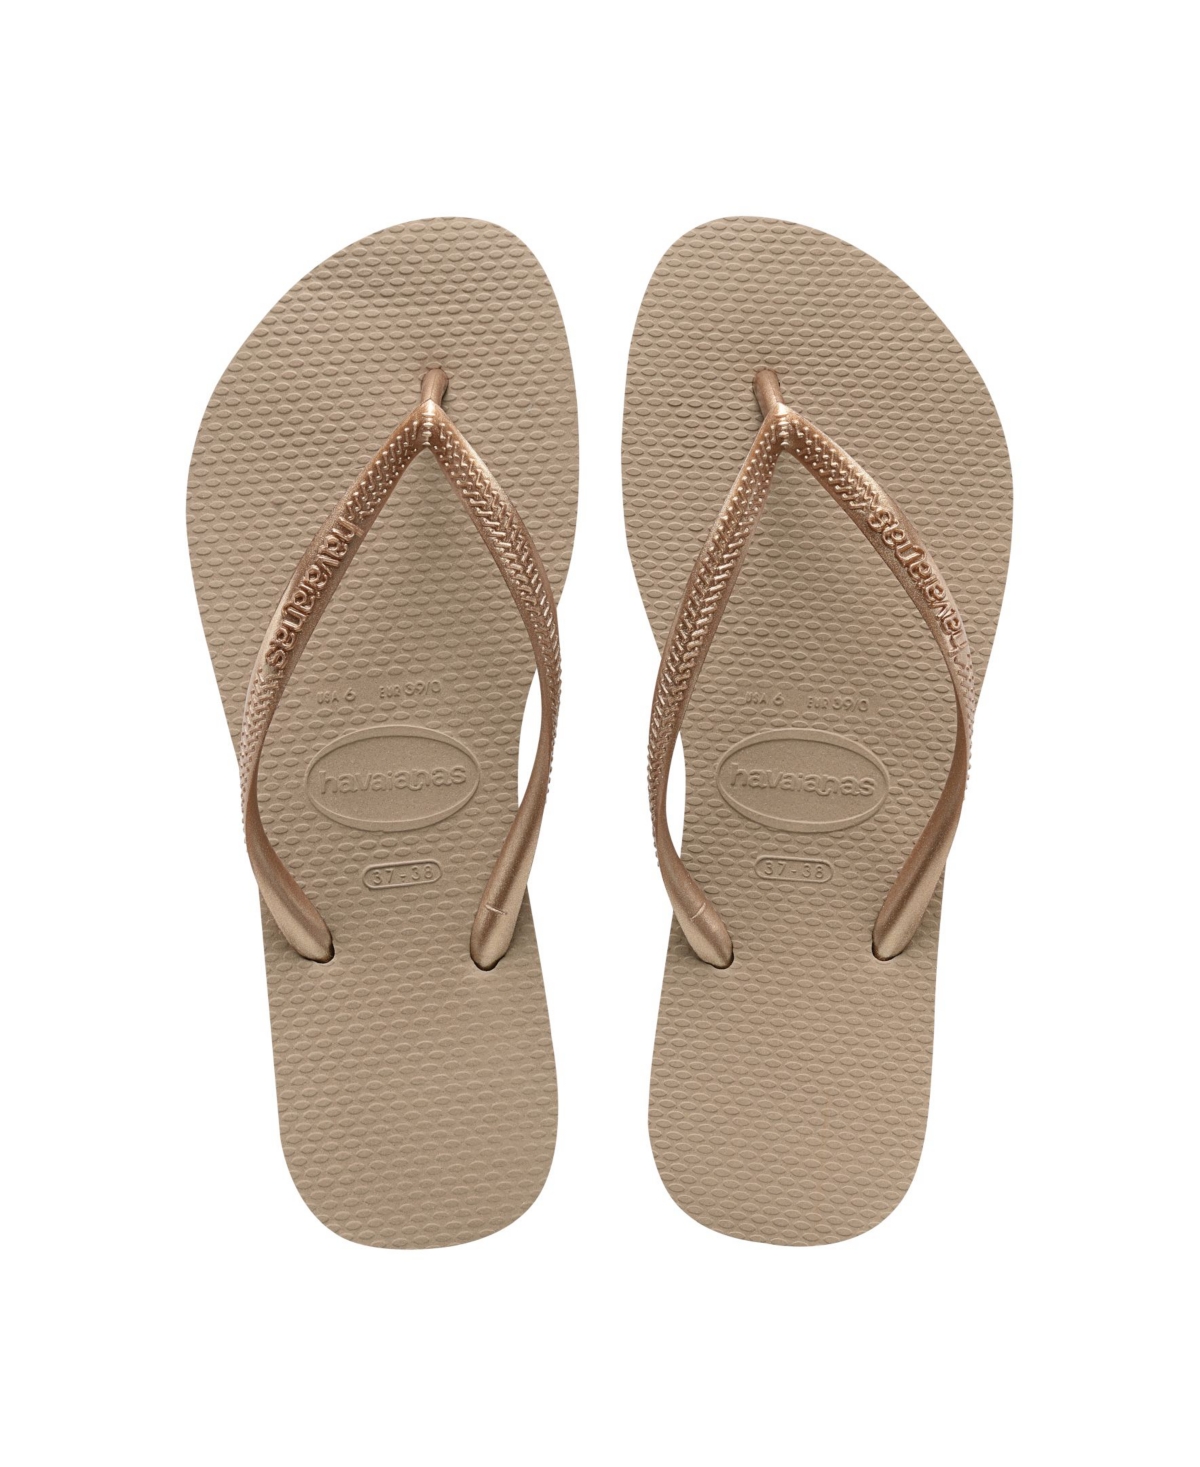 Women's Slim Flip-flop Sandals - Rust, Metallic Copper